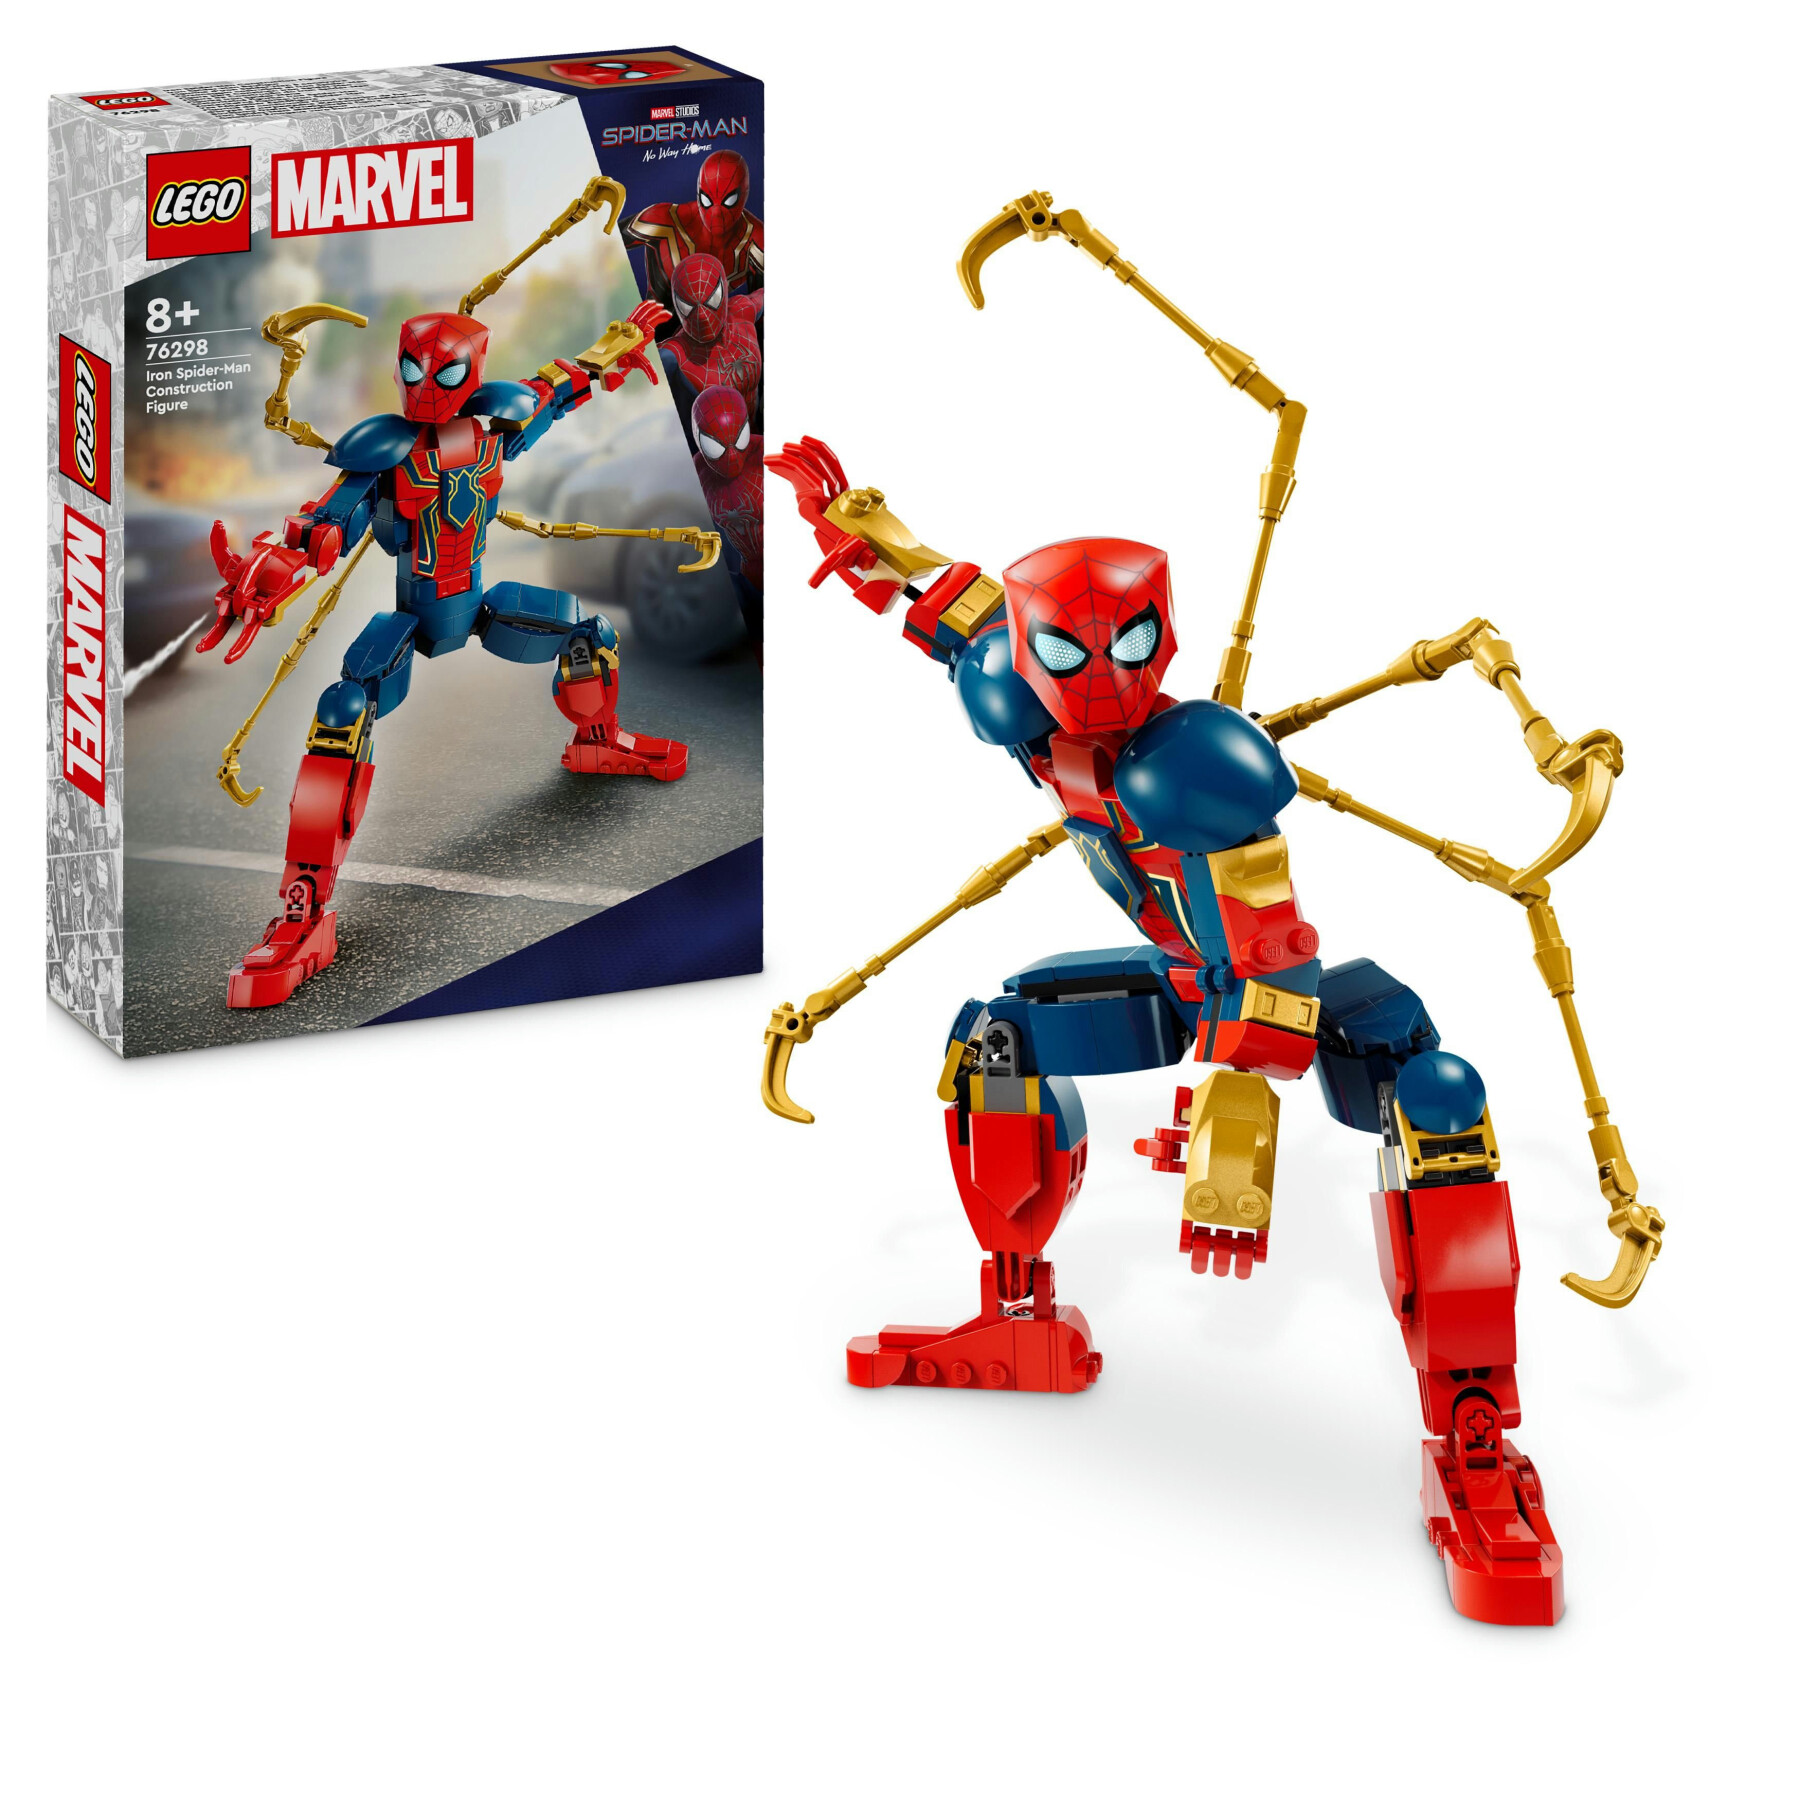 Lego marvel 76298 personaggio costruibile di iron spider-man, gioco per bambini 8+, supereroe snodabile con 4 braccia extra - LEGO SUPER HEROES, Avengers, Spiderman